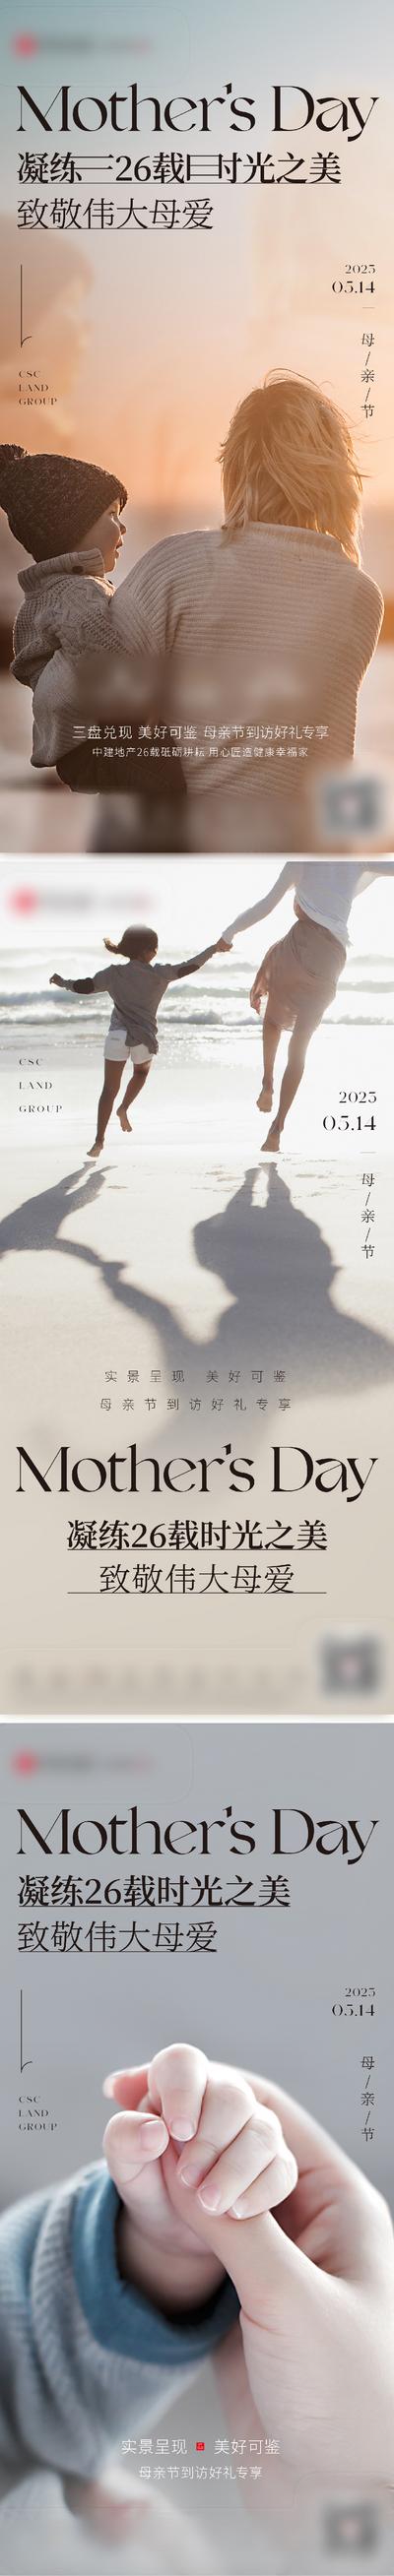 南门网 广告 海报 节日 母亲节 温馨 海滩 系列 